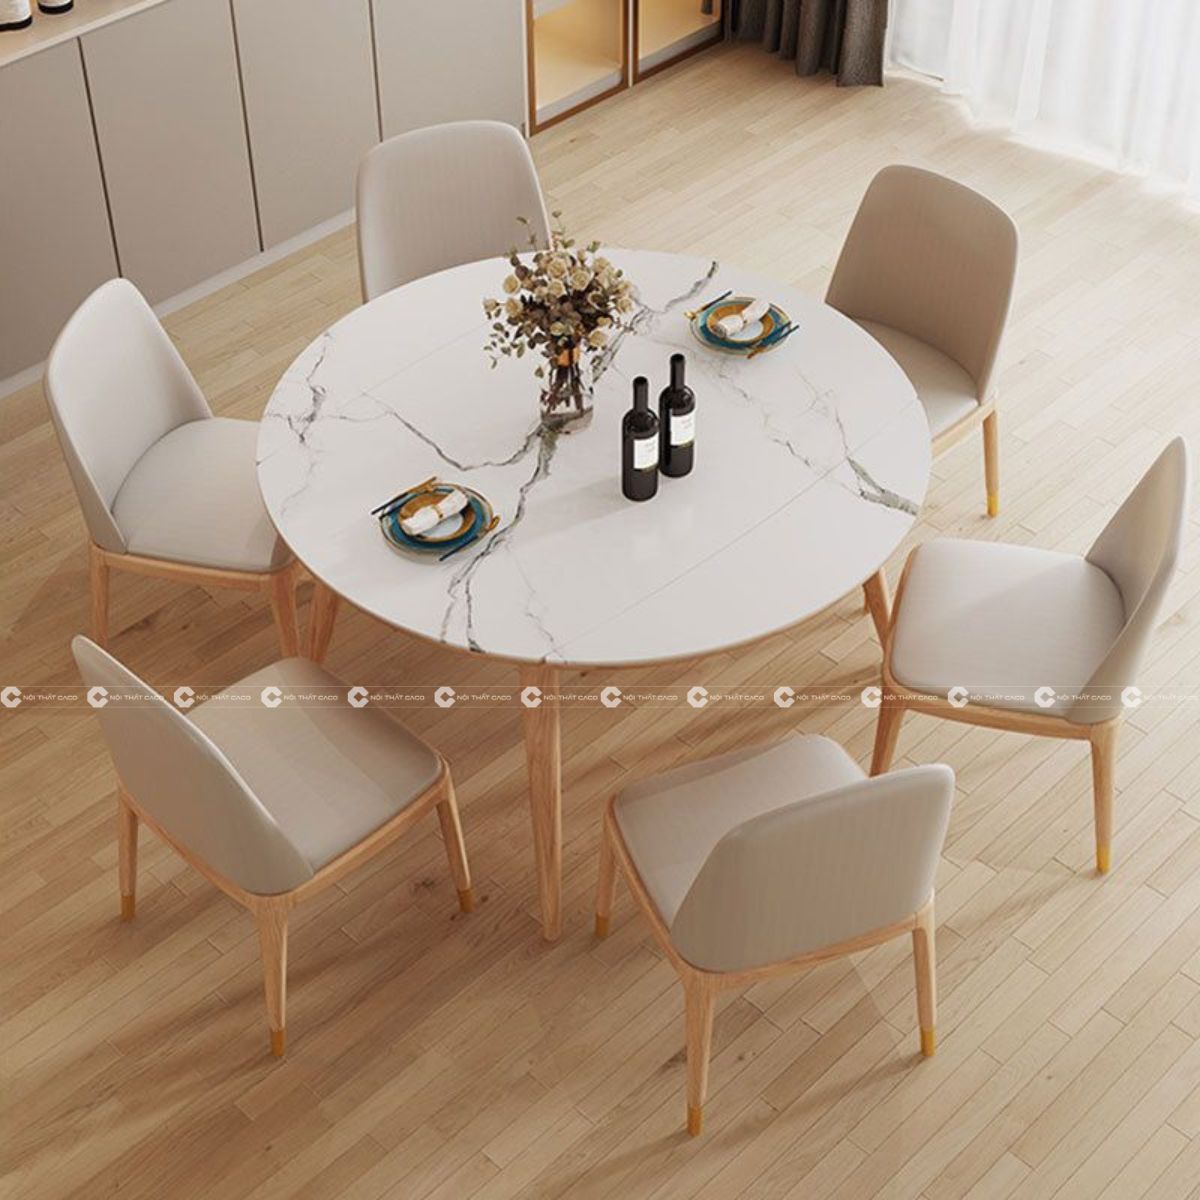 Bộ bàn ăn gỗ sồi tự nhiên thiết kế mới lạ, hiện đại